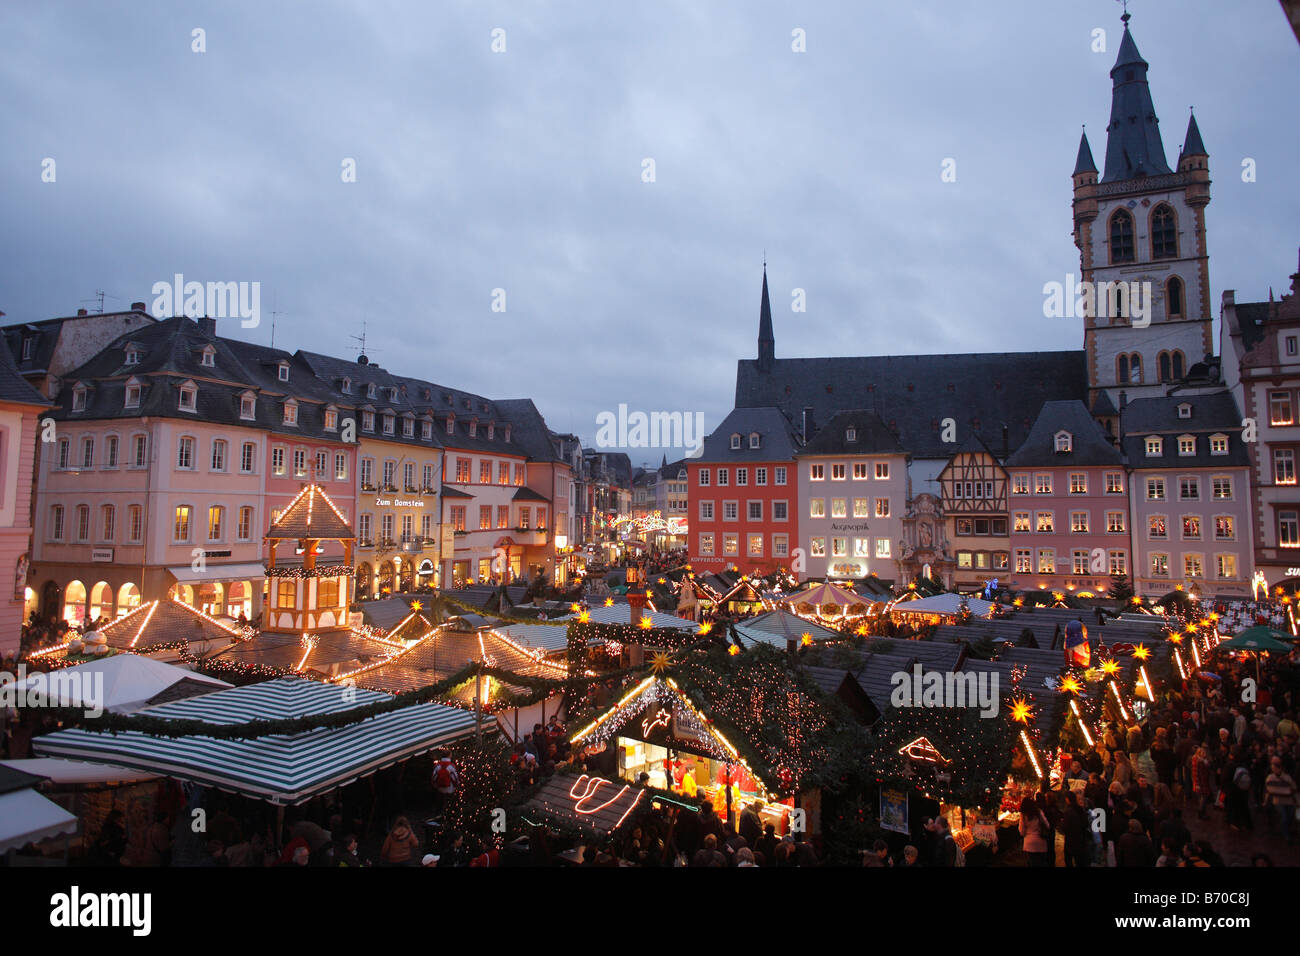 Noël, Place du marché, Trèves, Rheinland, Allemagne Banque D'Images